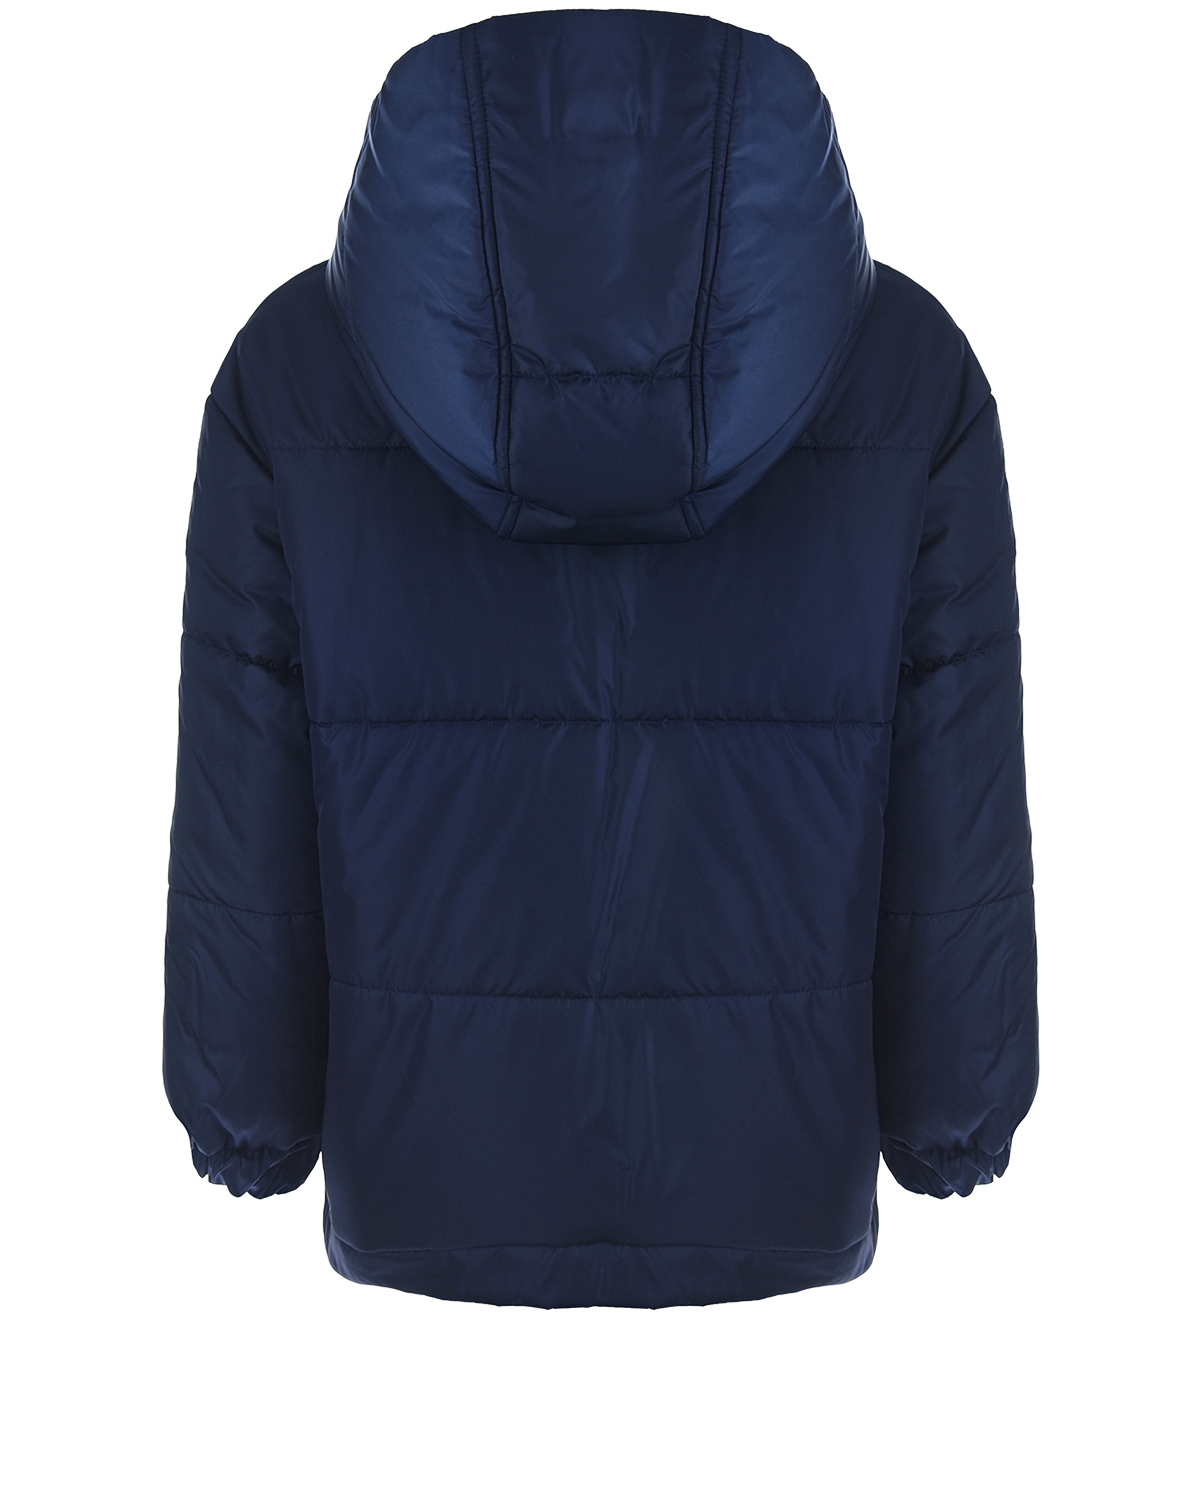 Двухсторонняя стеганая куртка Fendi детская, размер 128, цвет синий - фото 2